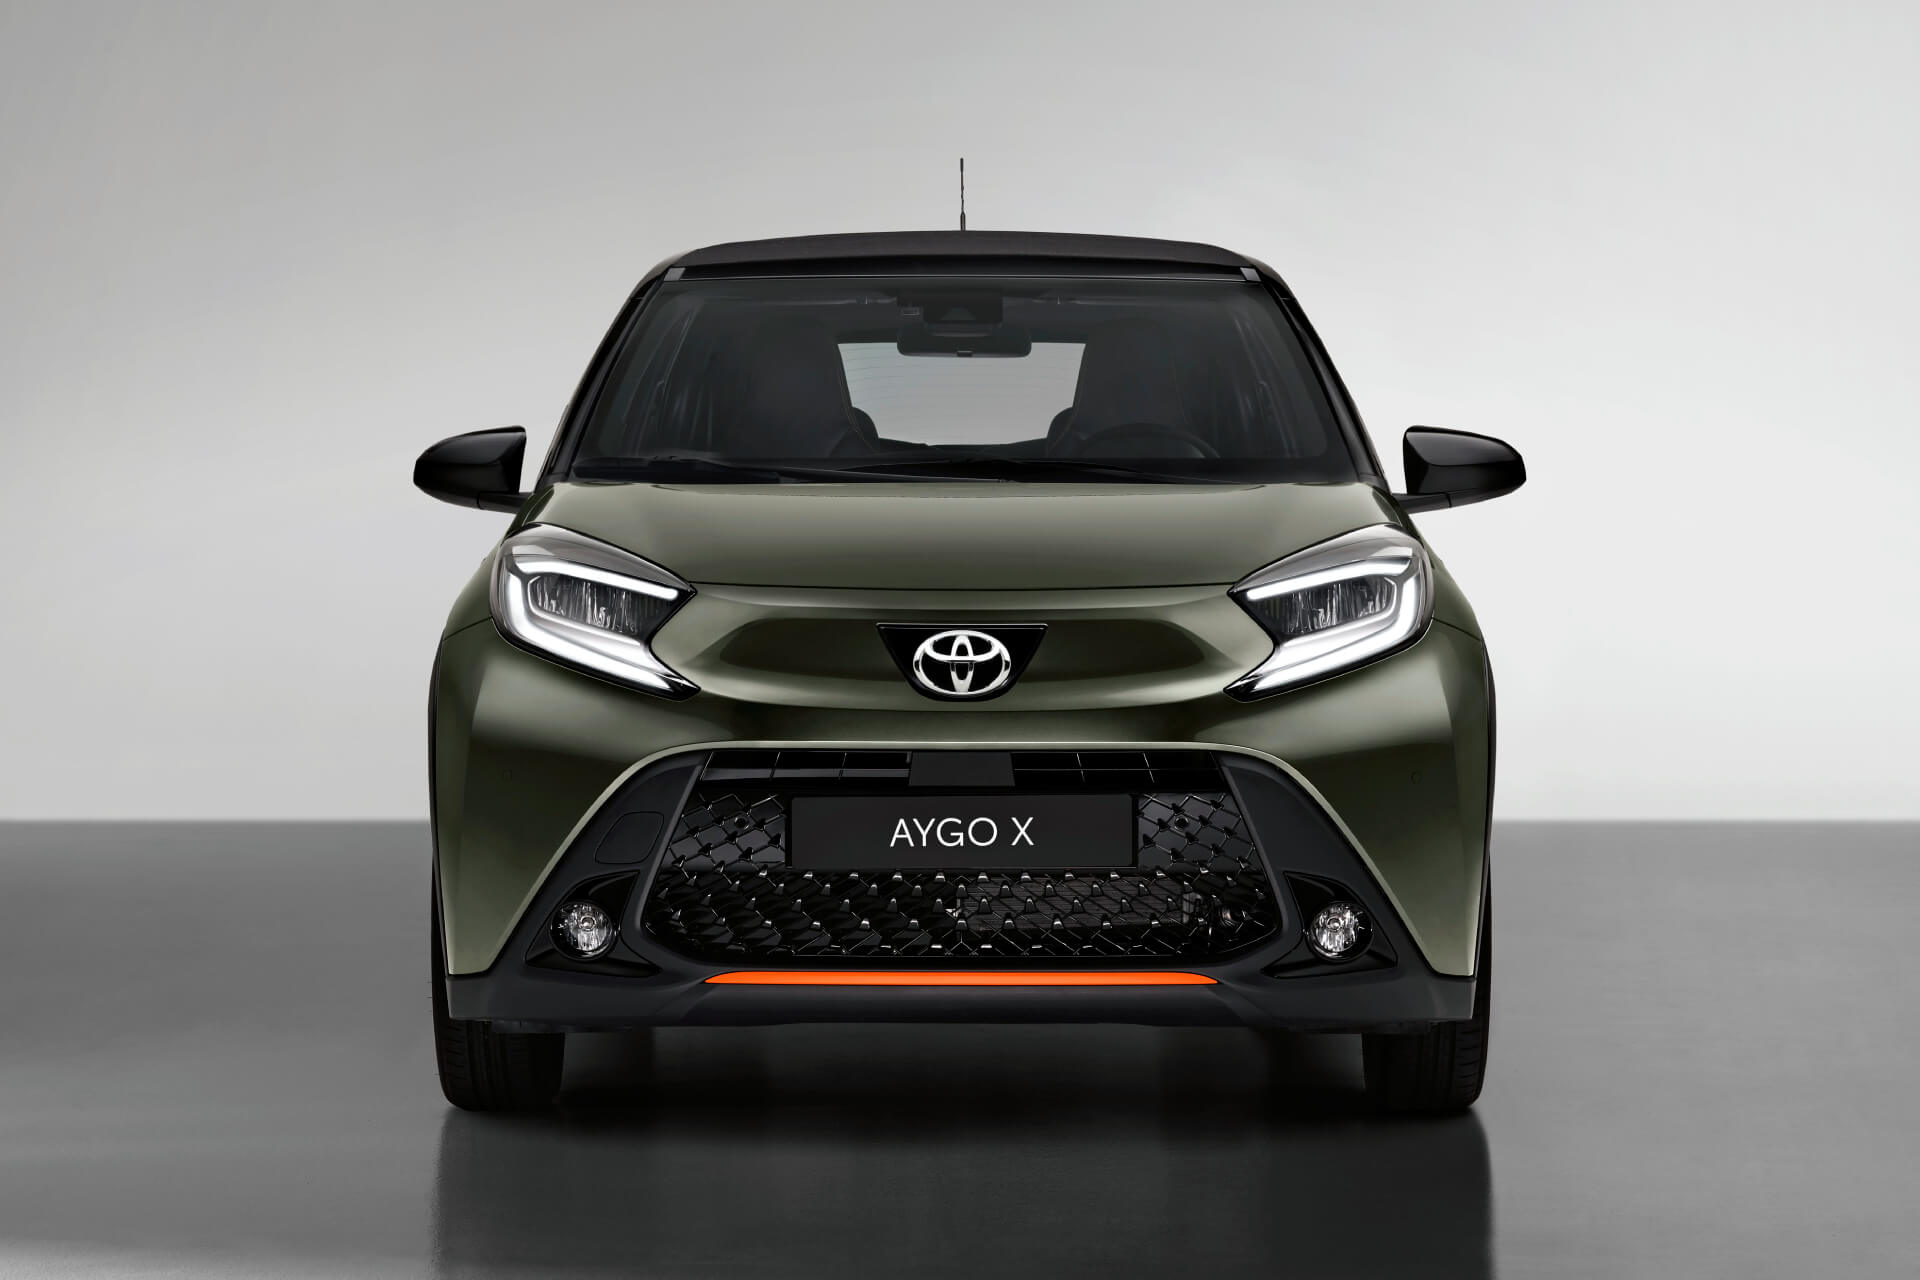 Toyota Aygo X Cross: el pequeño de la familia ya no es tan pequeño